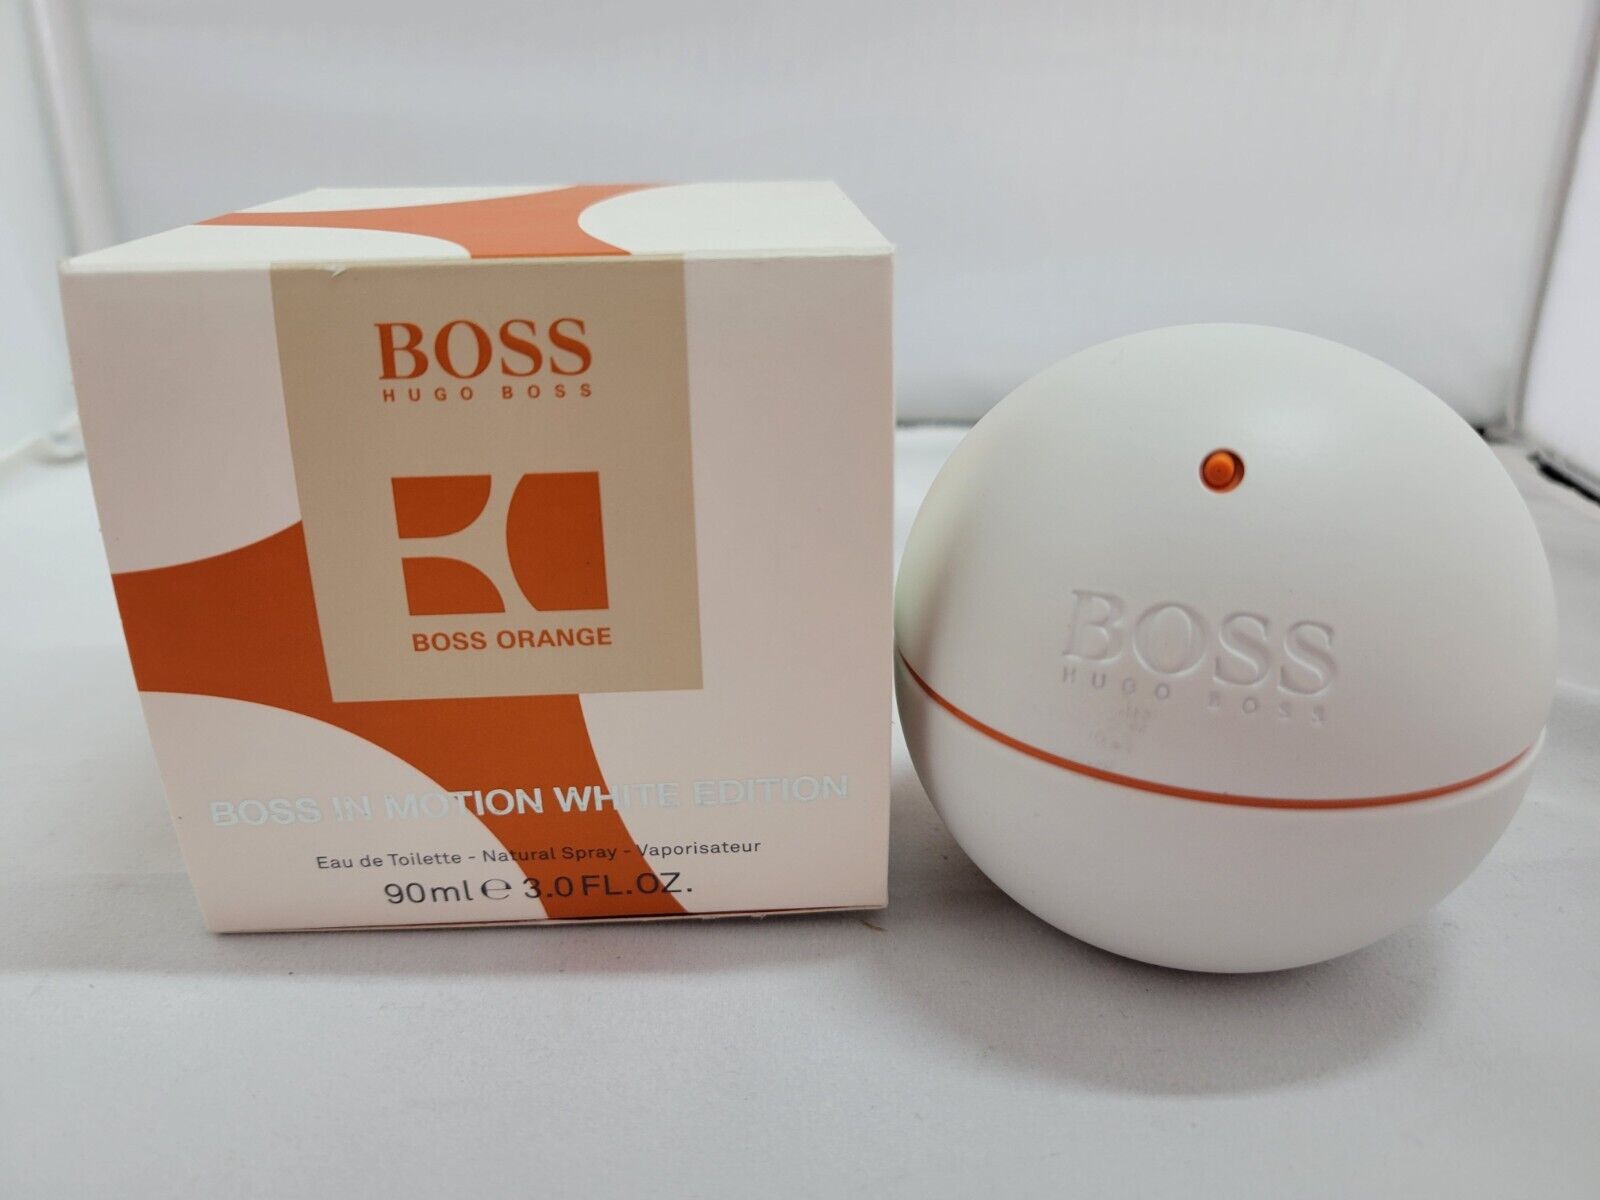 Hugo Boss in Motion White Edition Eau de Parfume 90ml for Men